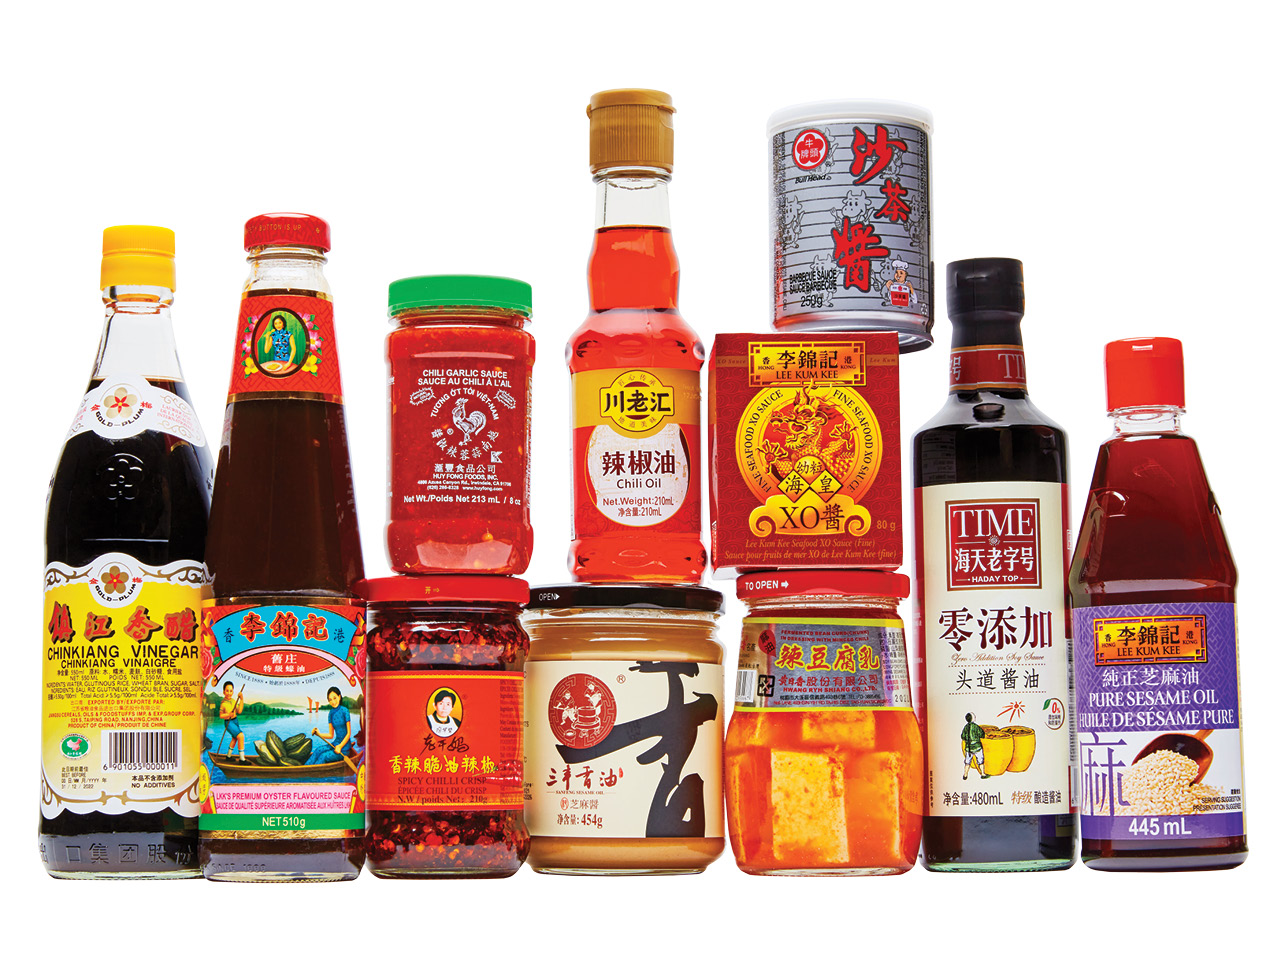 an assortment of hot sauce and vinegar bottles